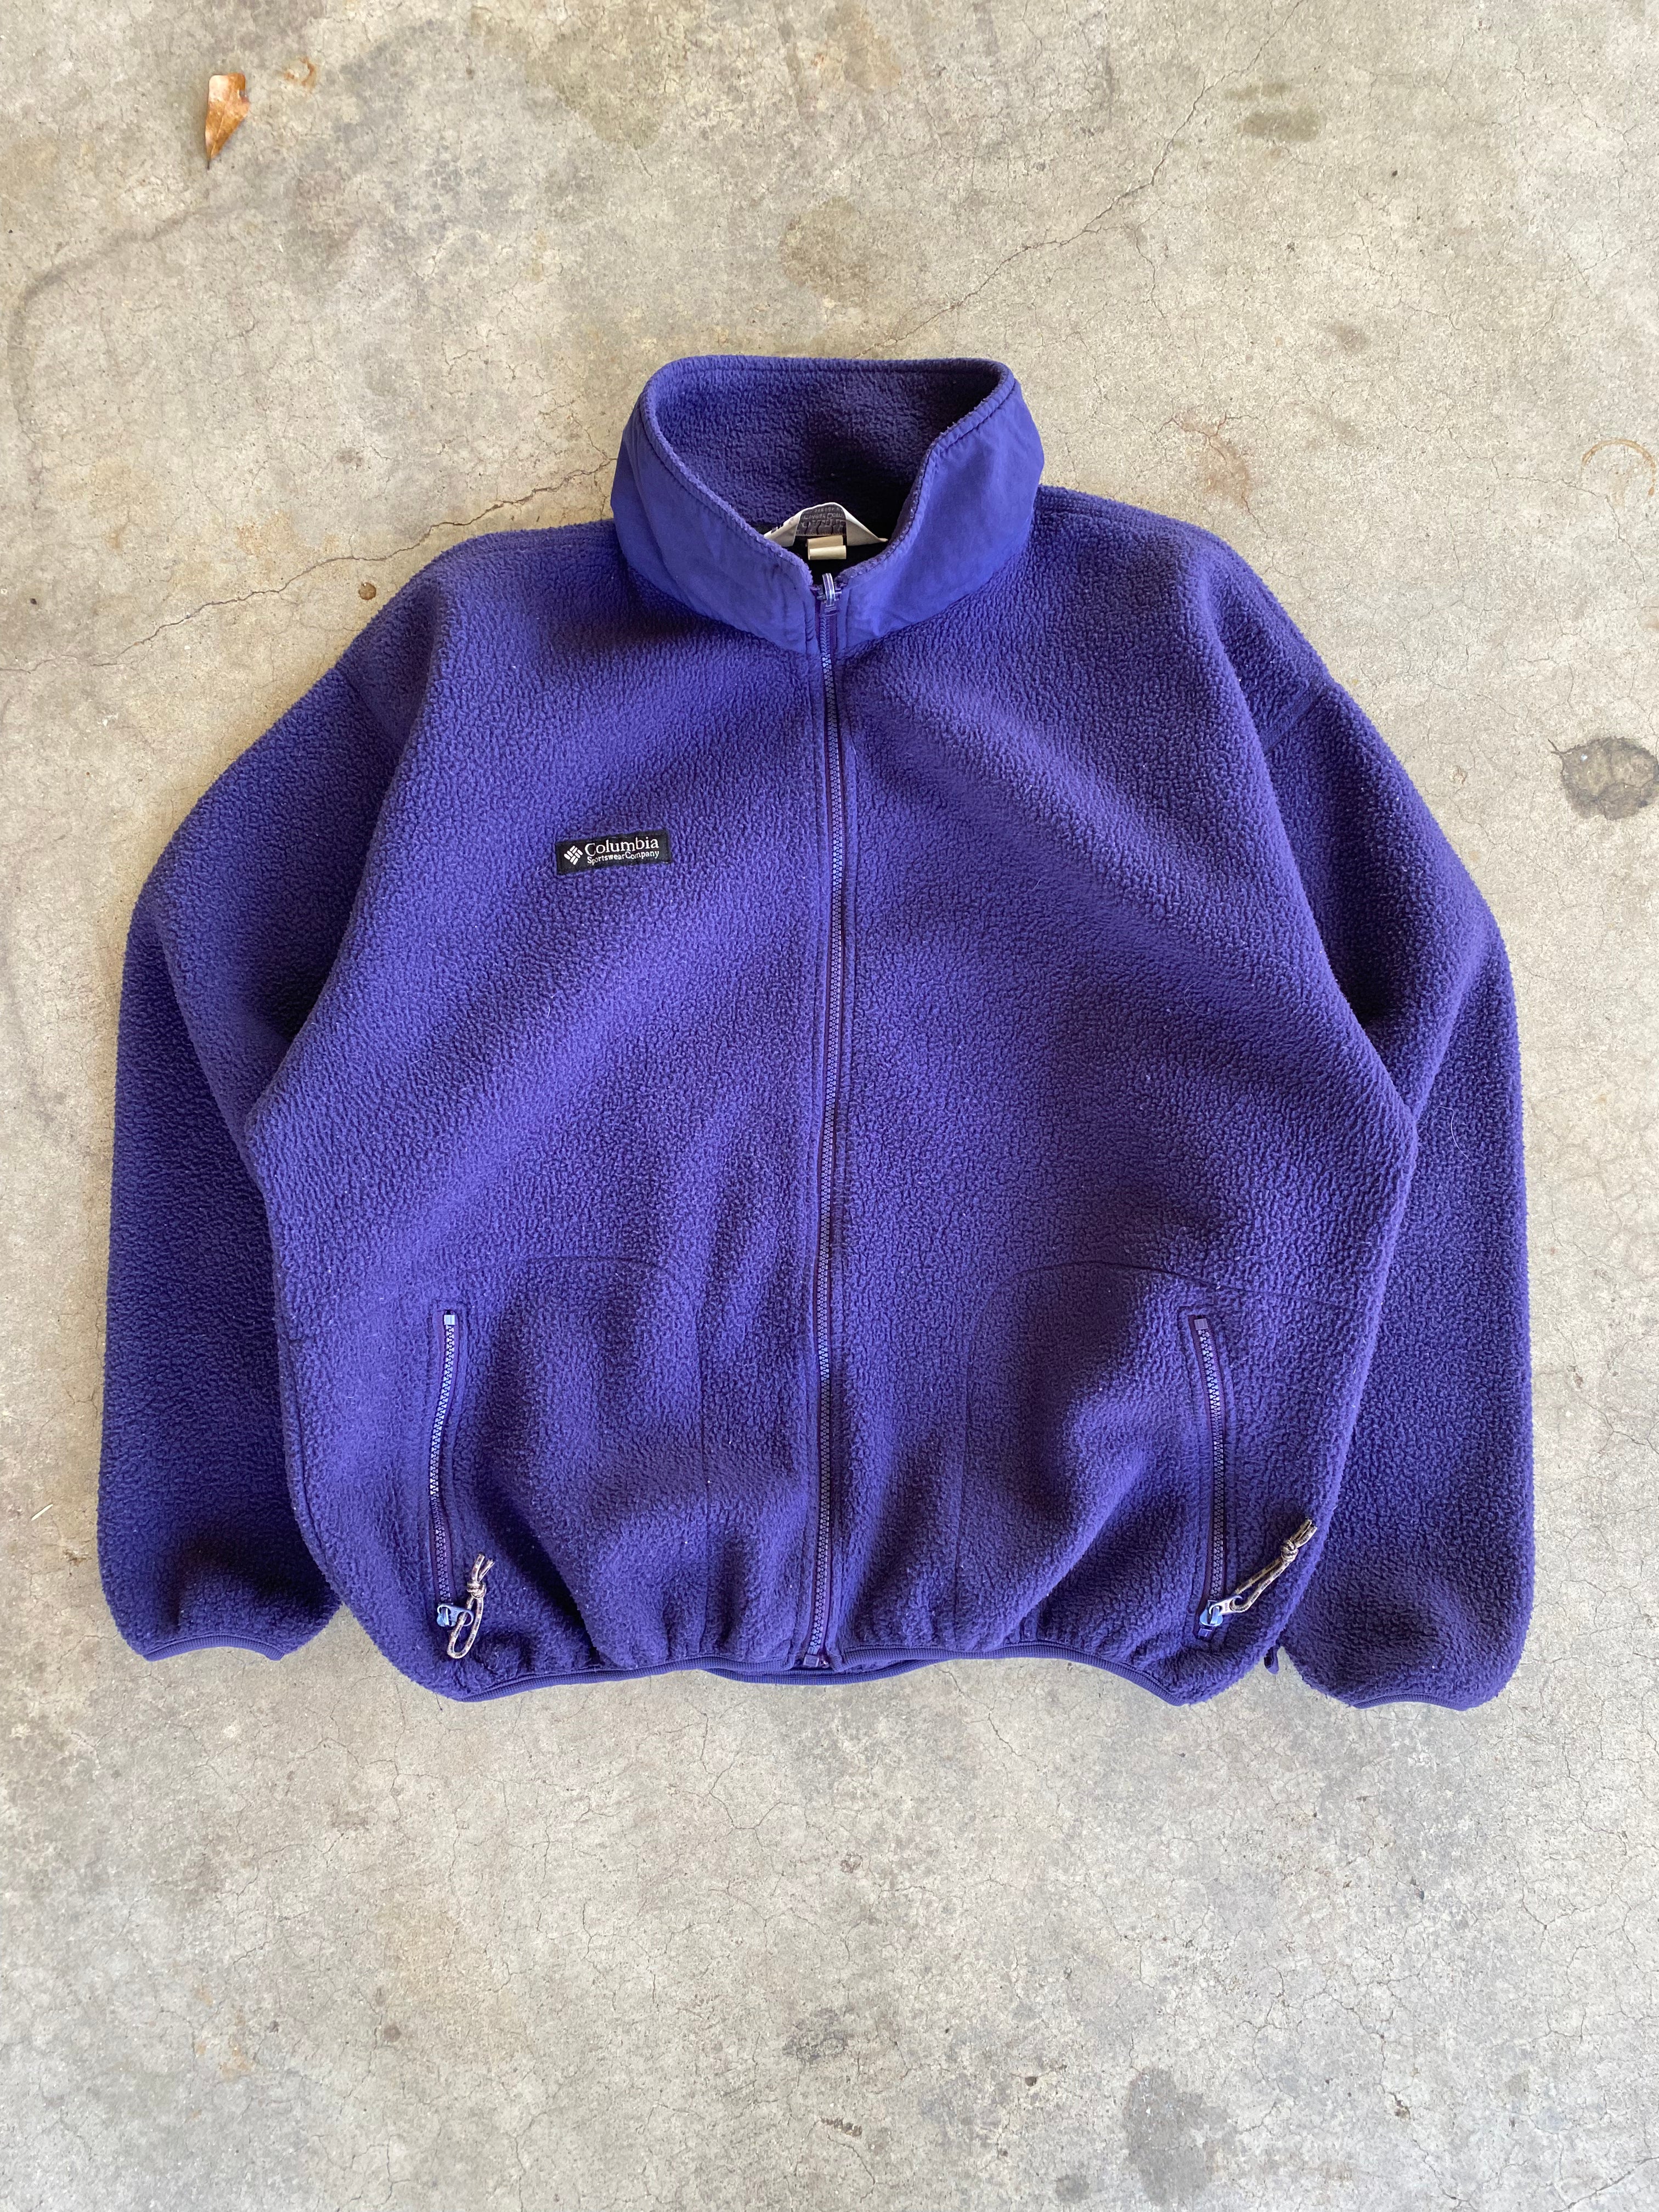 1990s Columbia Deep Pile Fleece Jacket (XL)